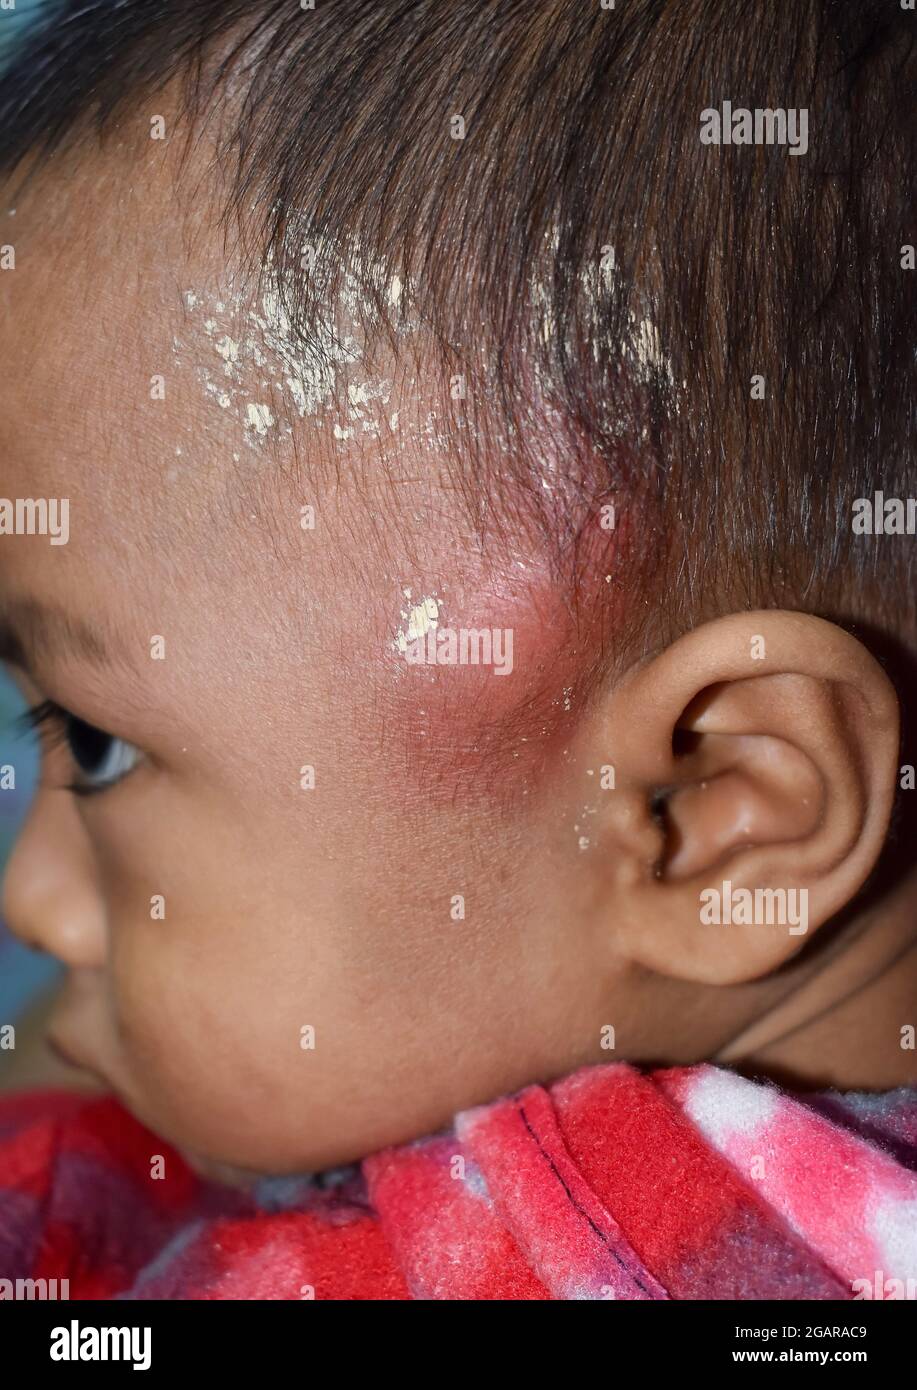 Schmerzhafte Karbunkel oder Cellulitis oder Staphylokokken / Streptokokken-Hautinfektion mit topischer traditioneller Medizin, die im Kopf von asiatischen Burmesen angewendet wird Stockfoto